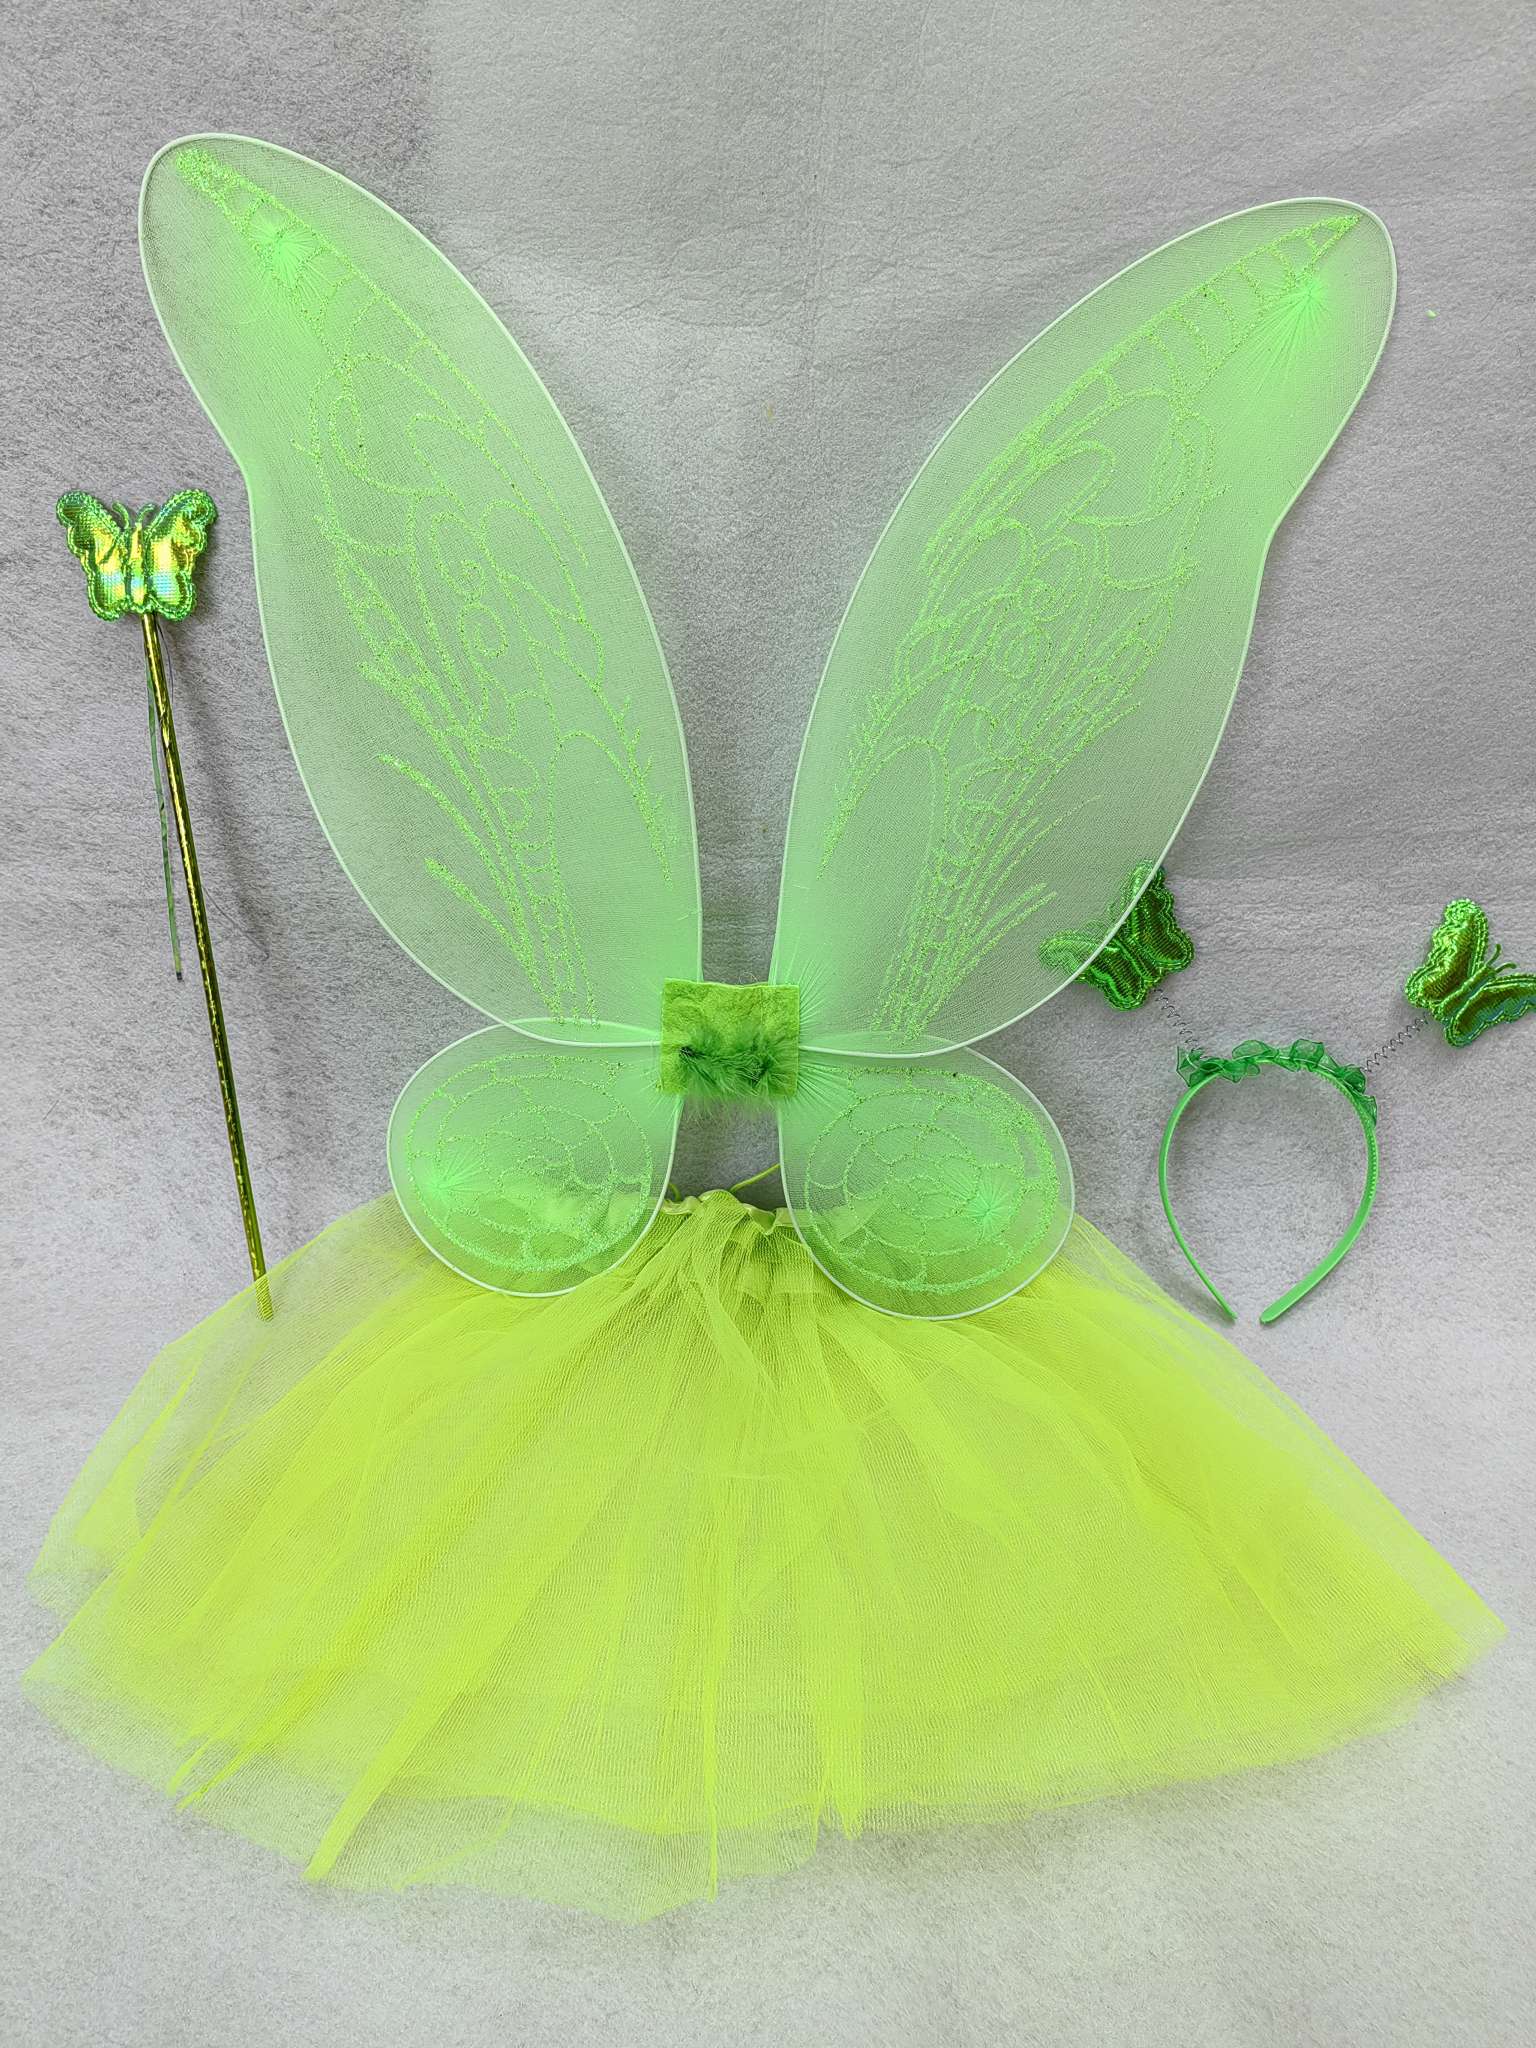 蝴蝶翅膀TUTU裙套装六一儿童节生日礼物派对用品厂家直销节日用品图